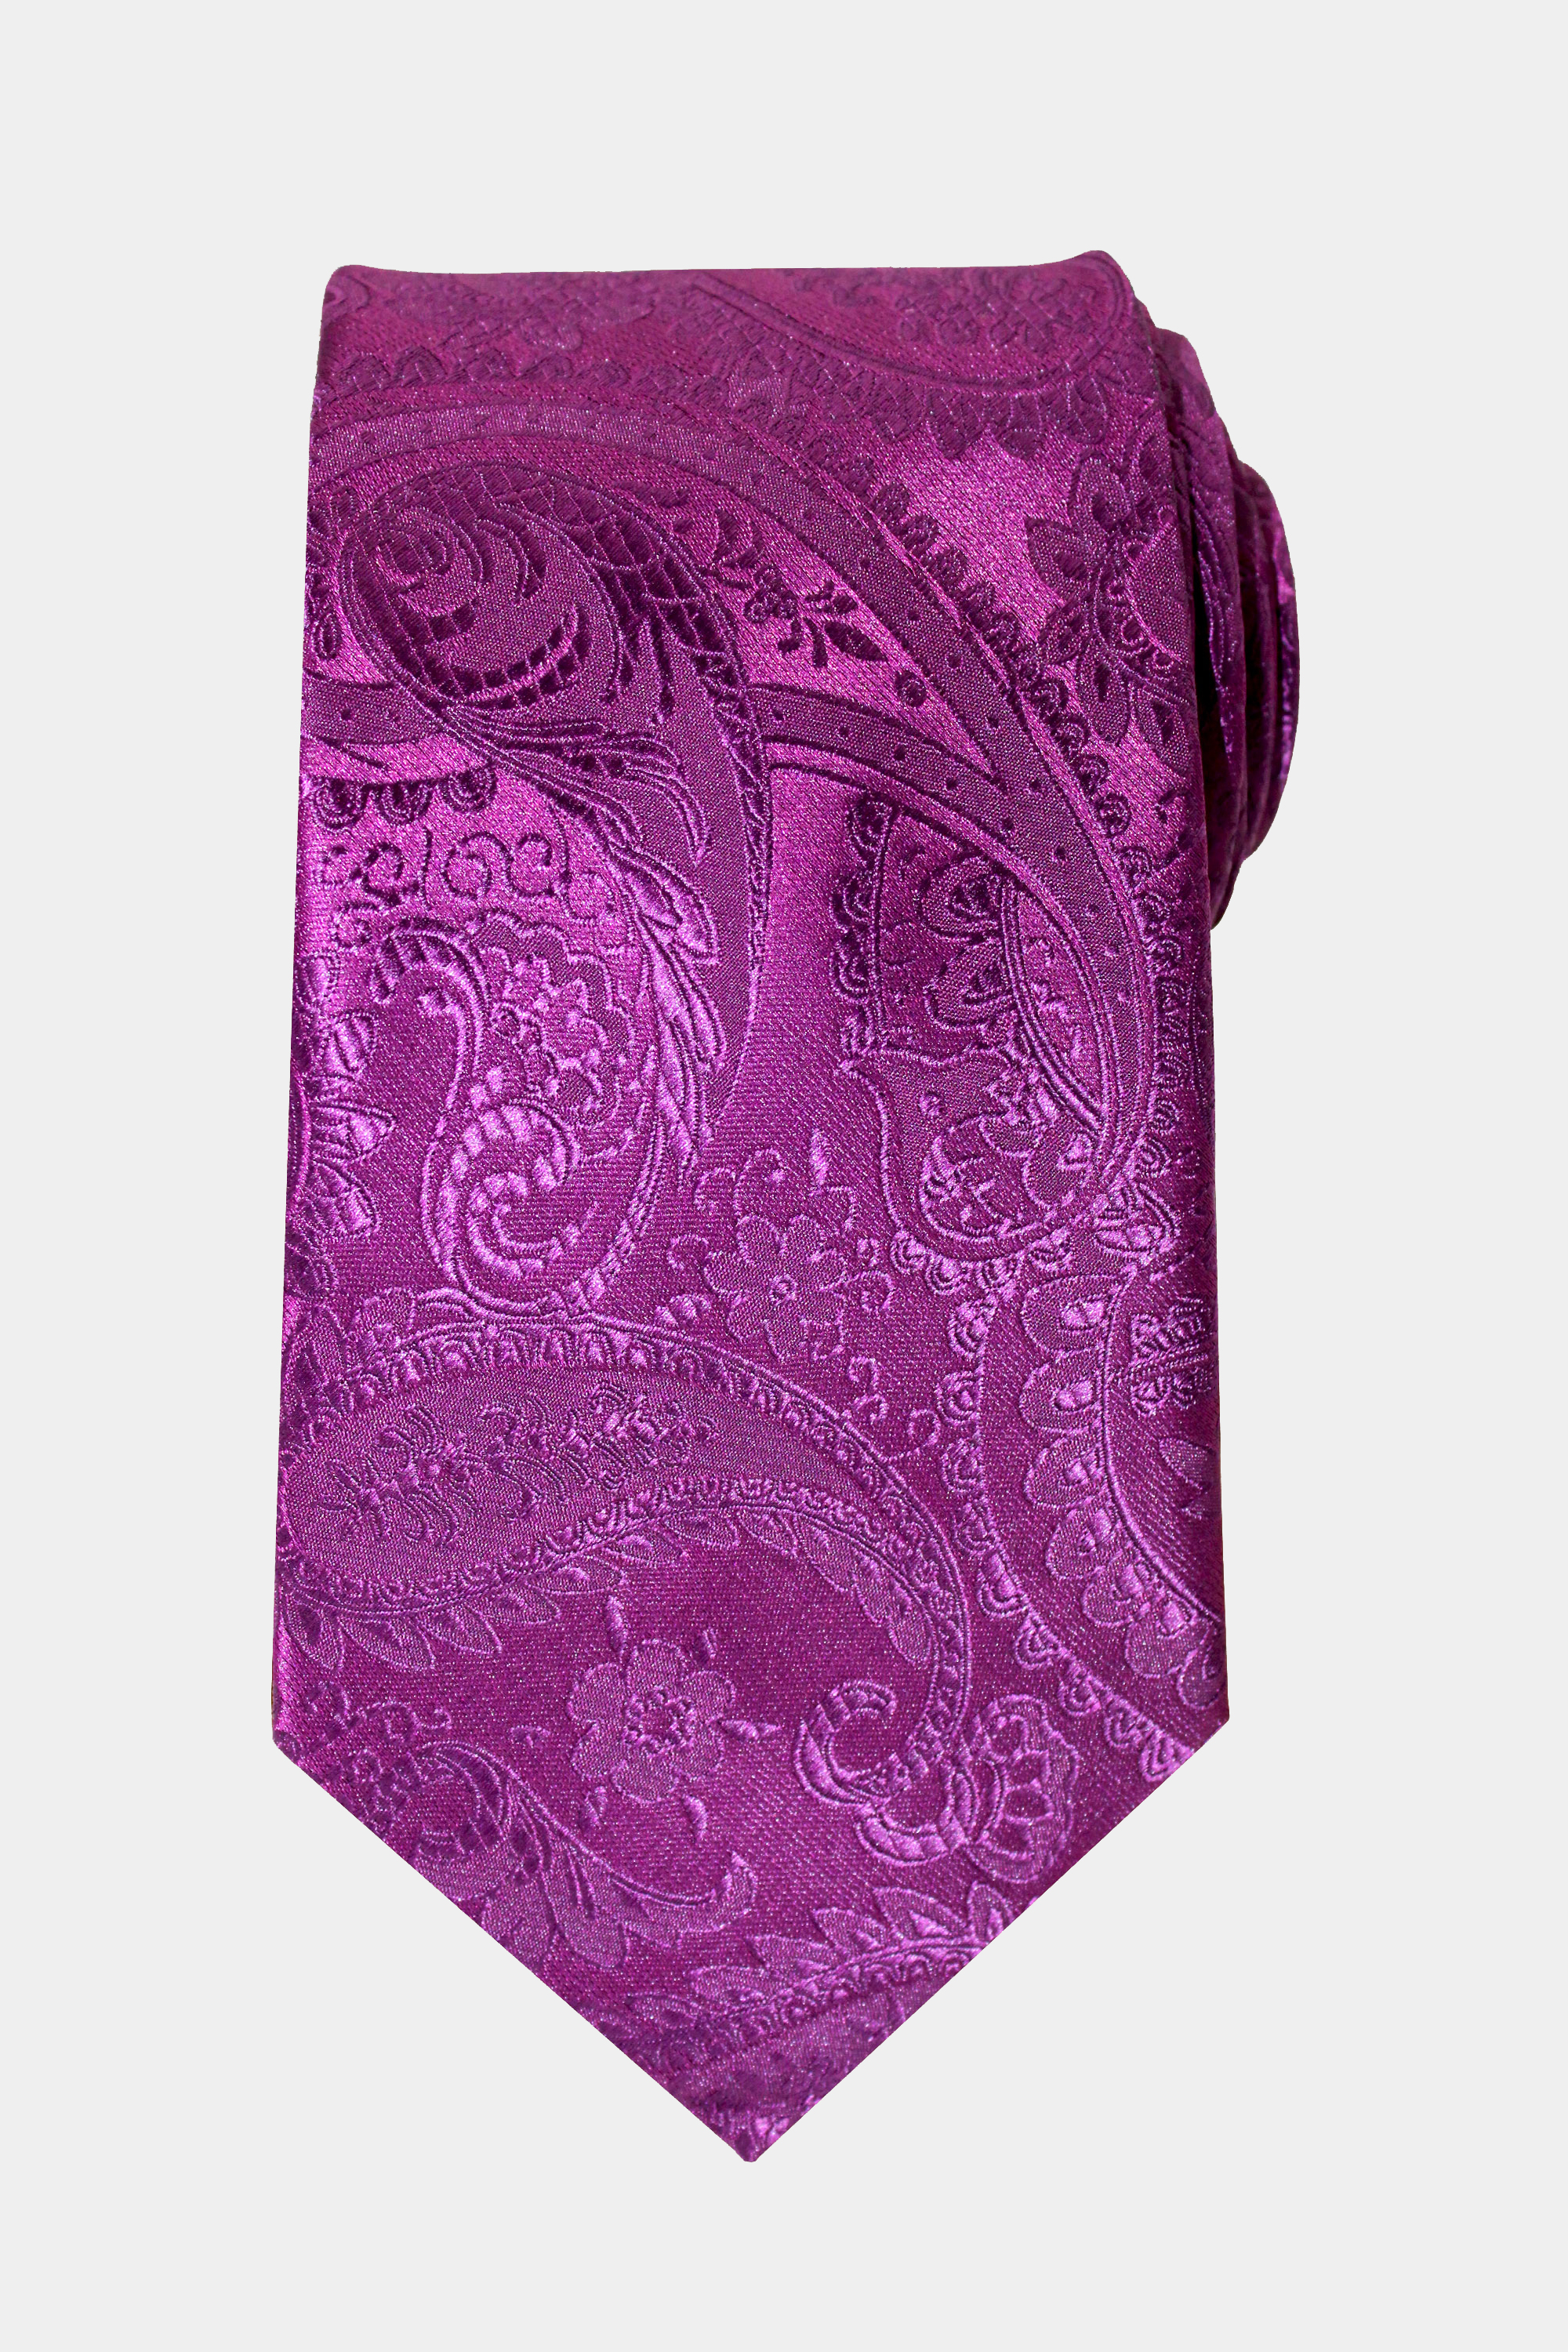 Magenta-Purple-Paisley-Tie-from-Gentlemansguru.com_